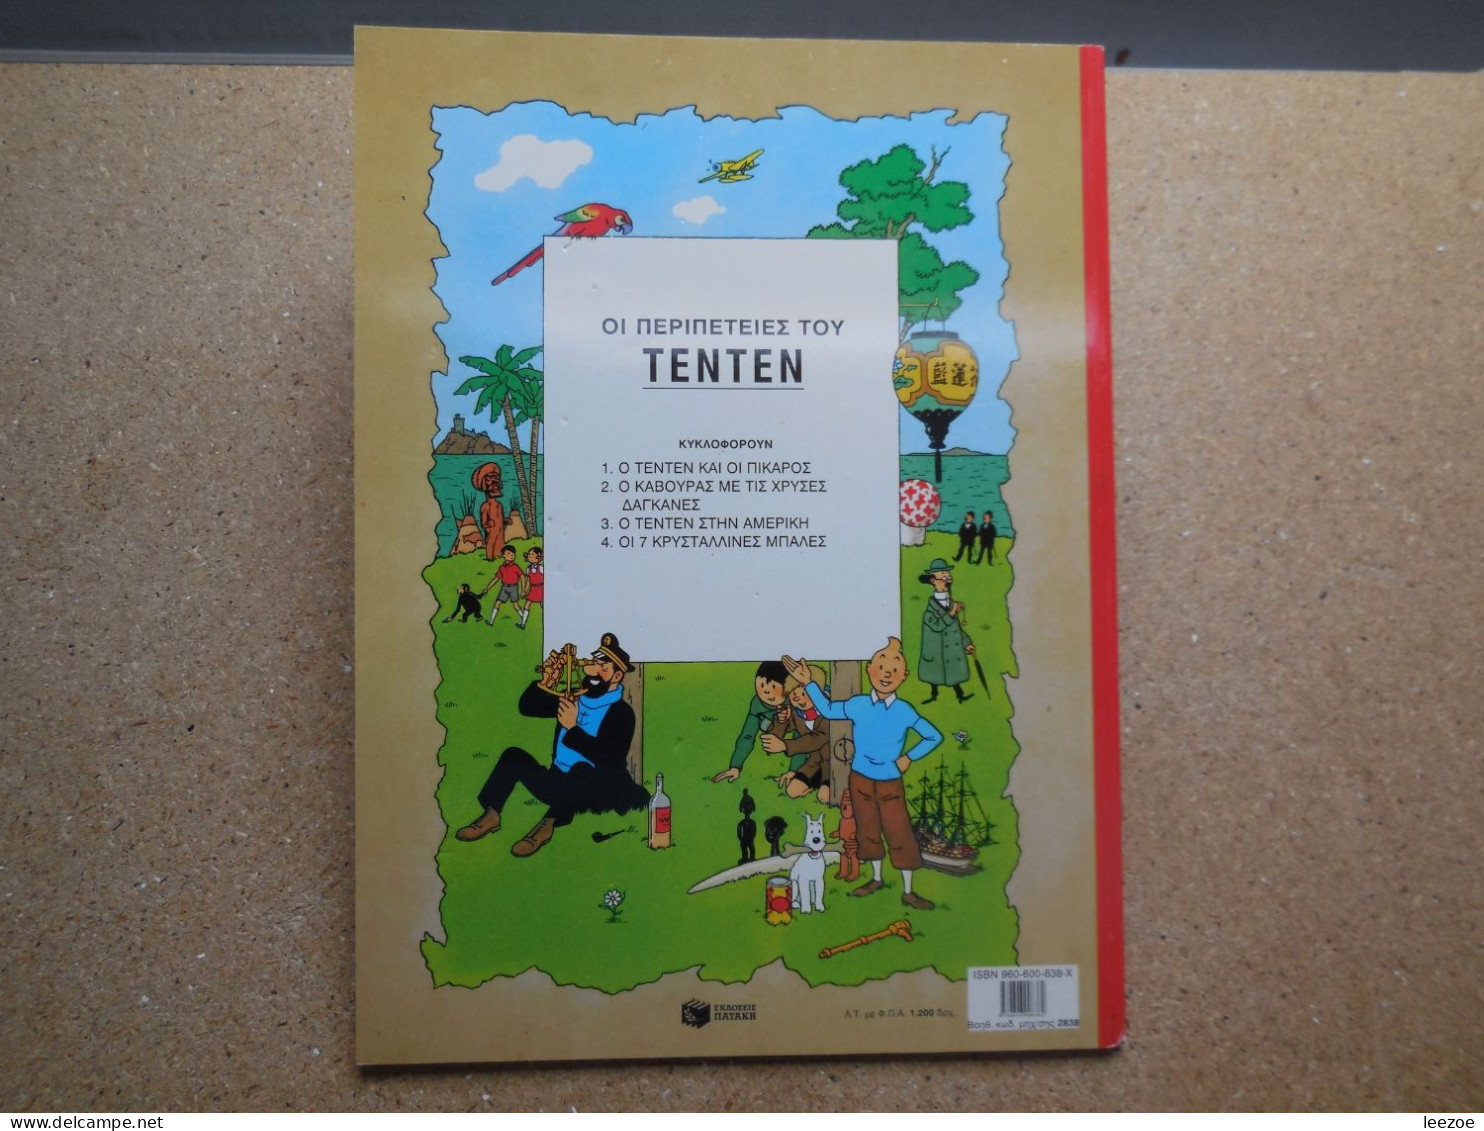 BD Tintin (en Langues étrangères) Grec. Ο Τεντέν στην Αμερική (O TENTEN ETHN AMEPIKH)...N5 - Stripverhalen & Mangas (andere Talen)